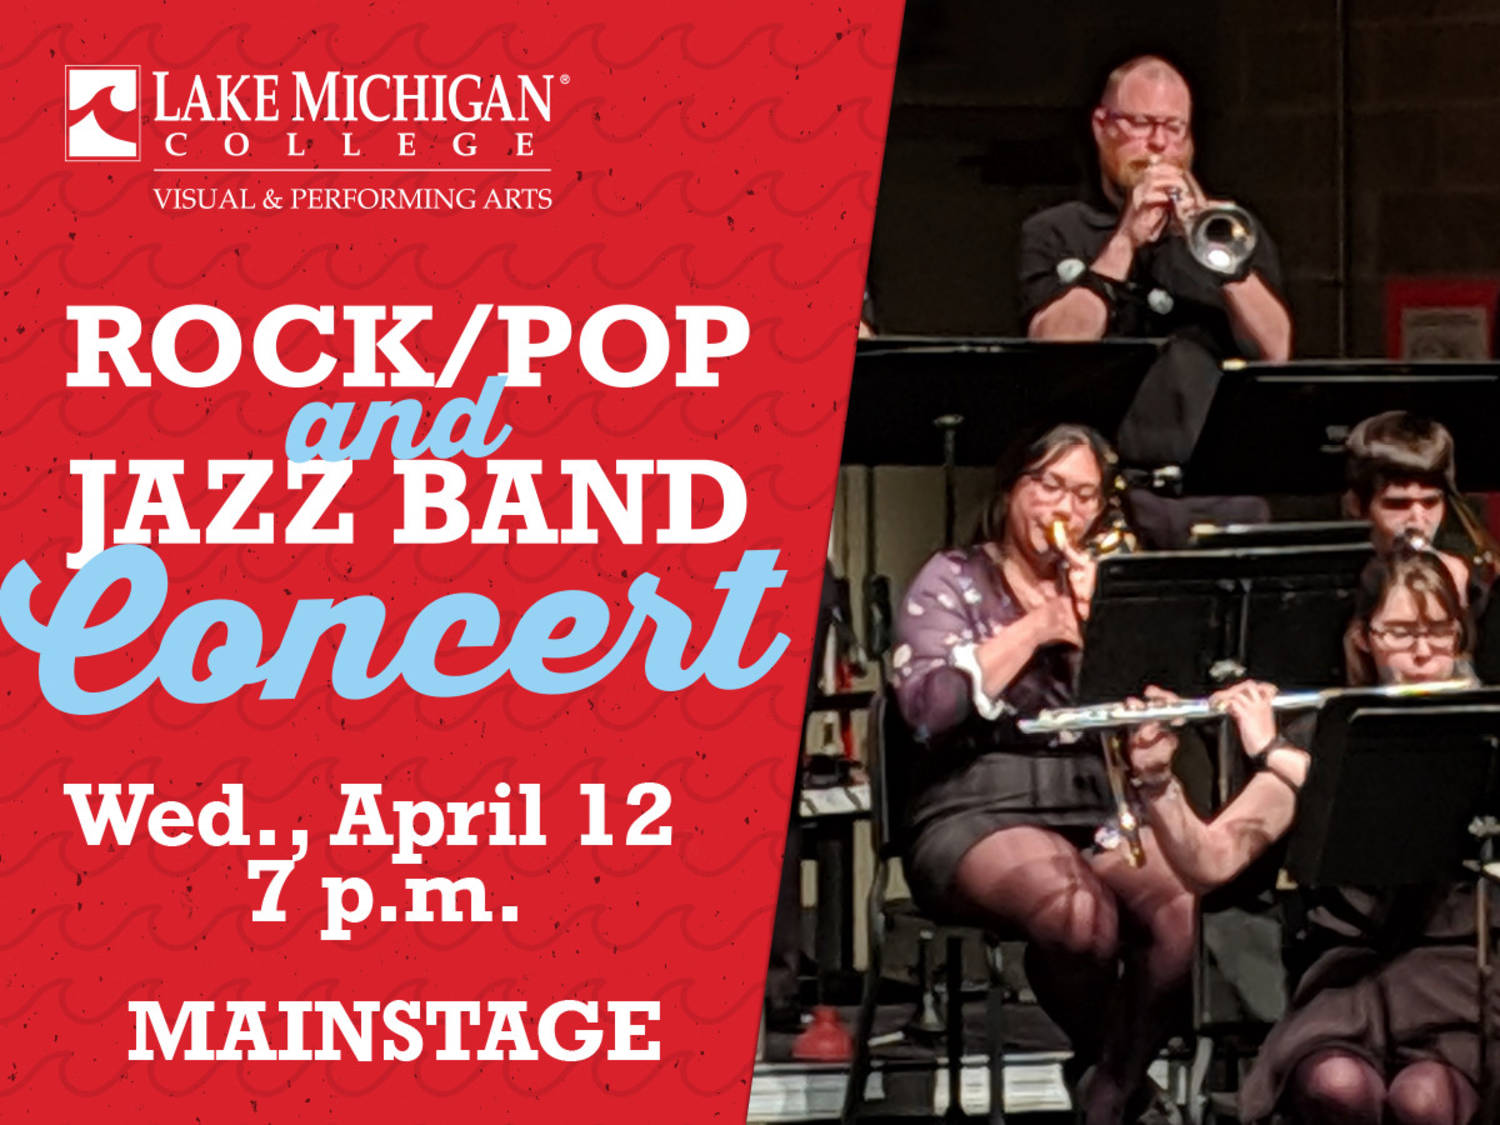 Rock/Pop & Jazz Band Concert slated for April 12